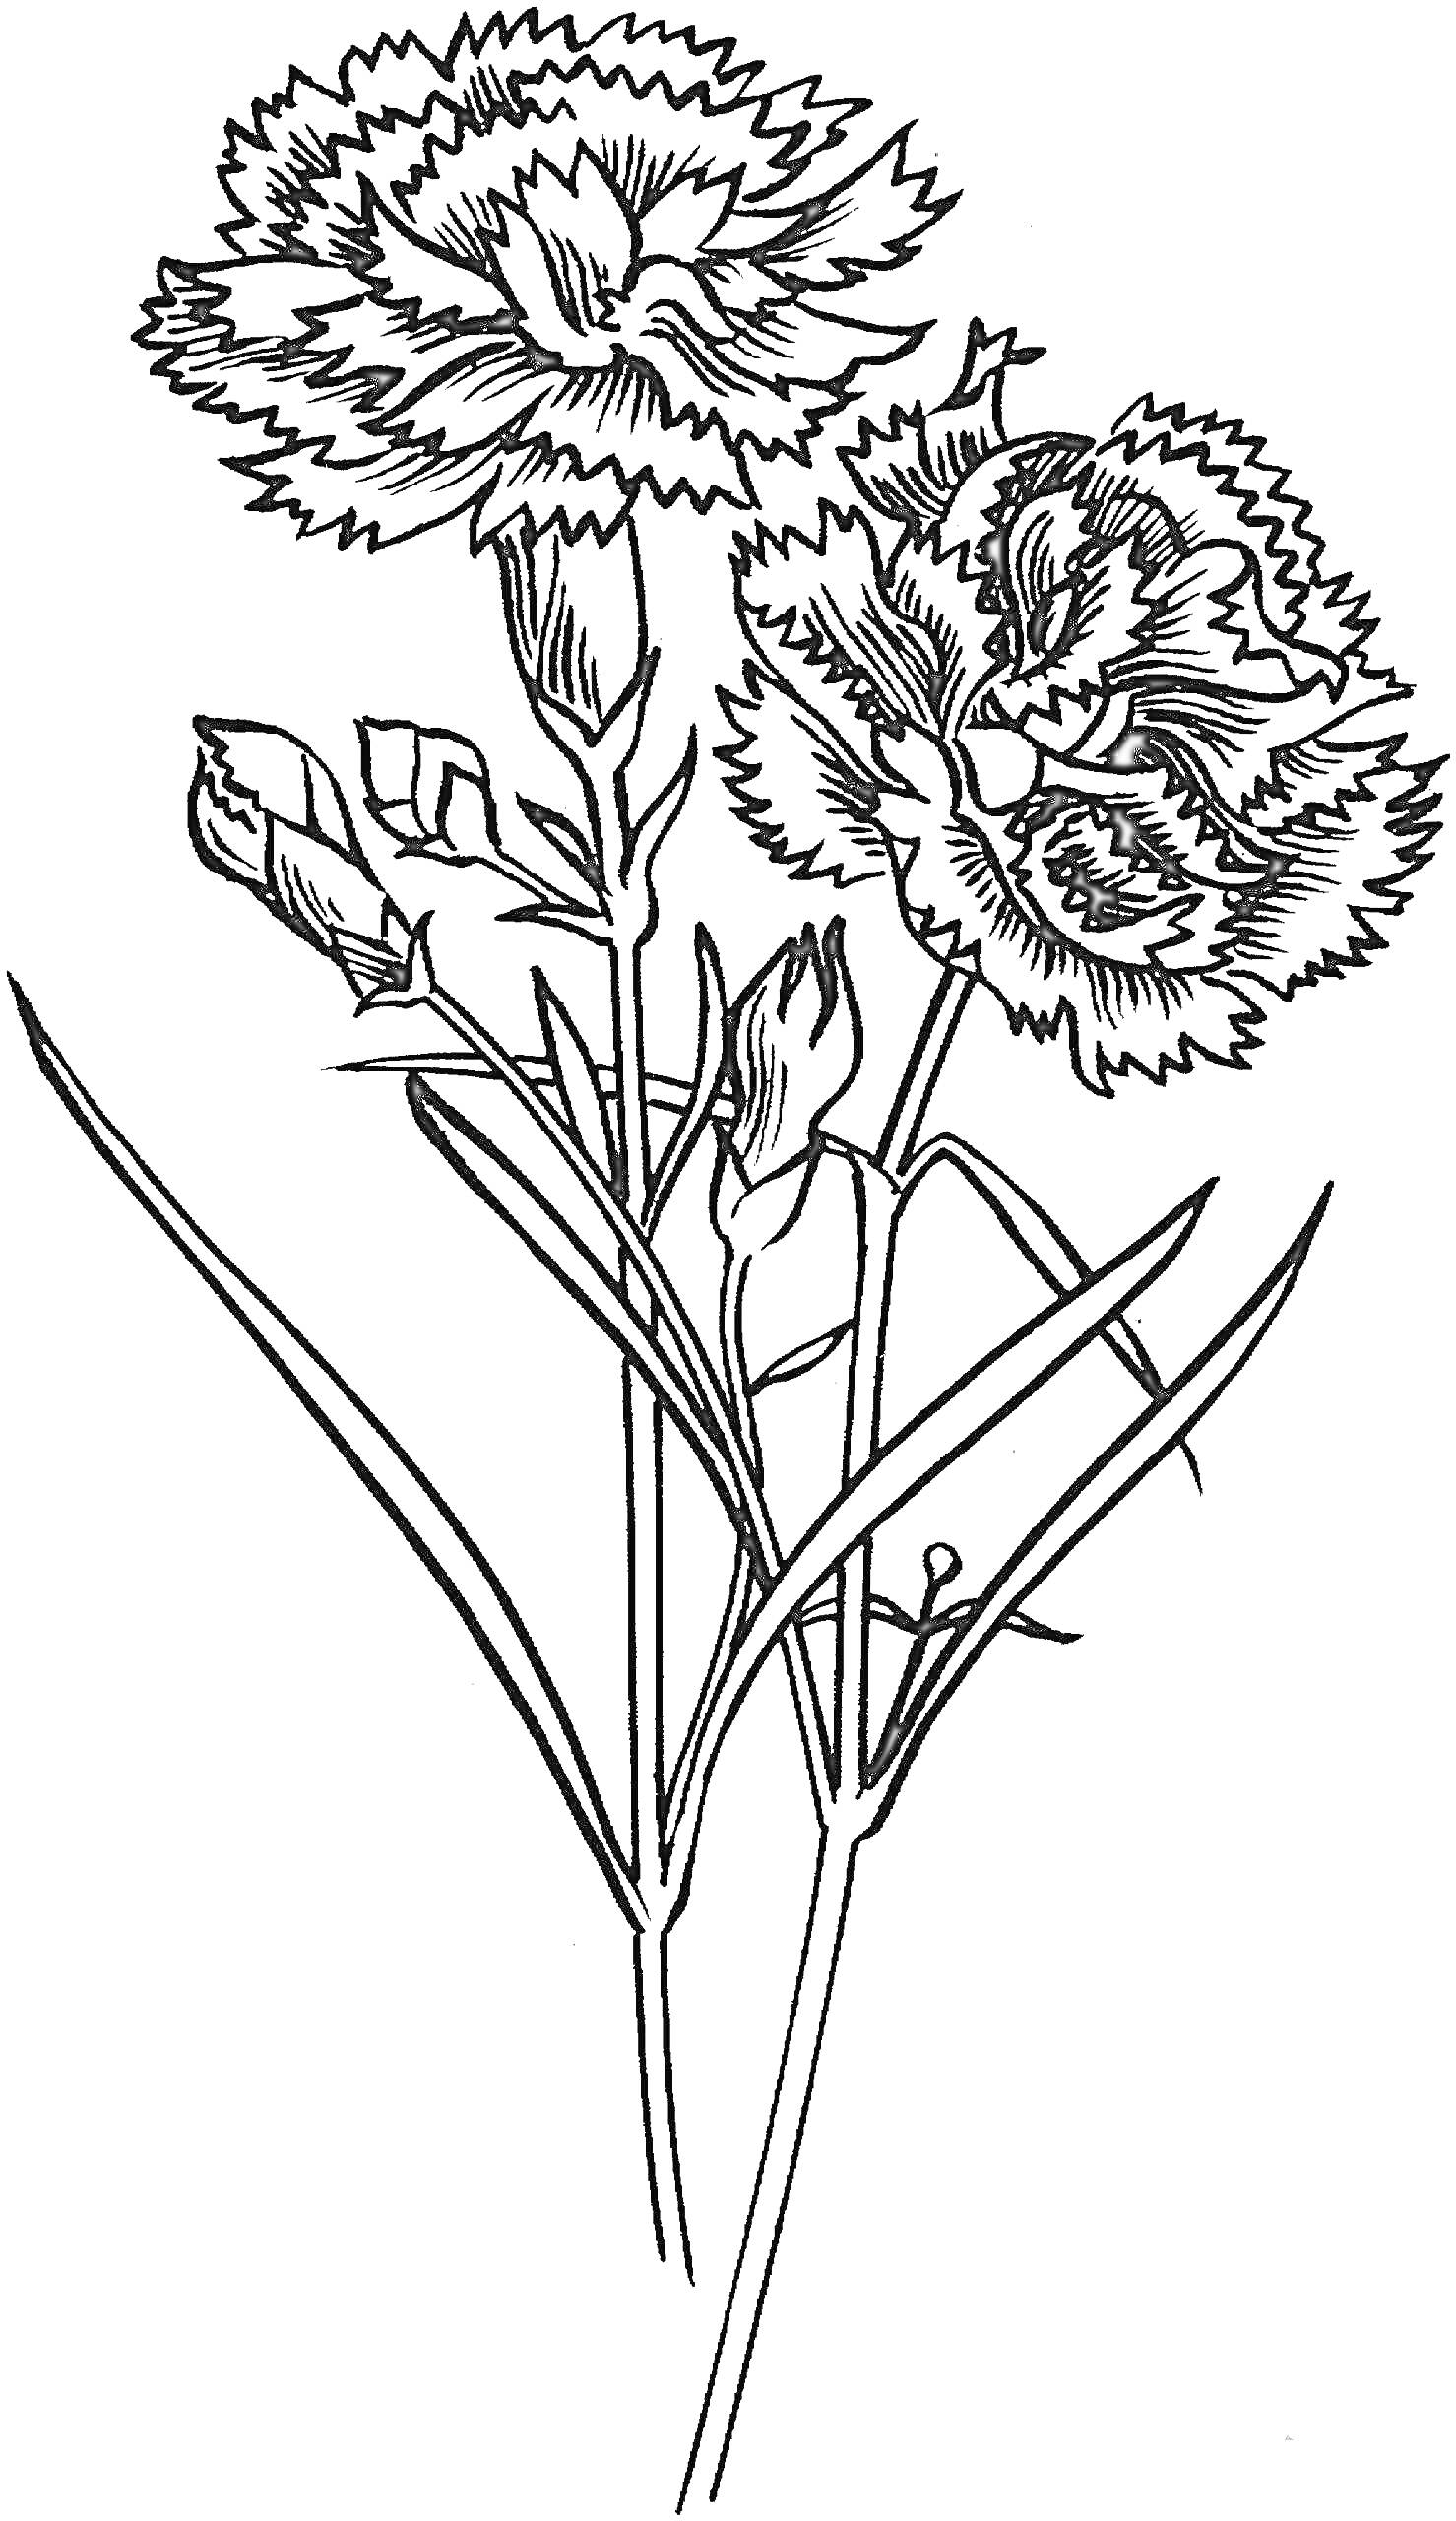 Раскраска Гвоздика - два крупных цветка гвоздики с зубчатыми лепестками, бутоны и листья на стеблях